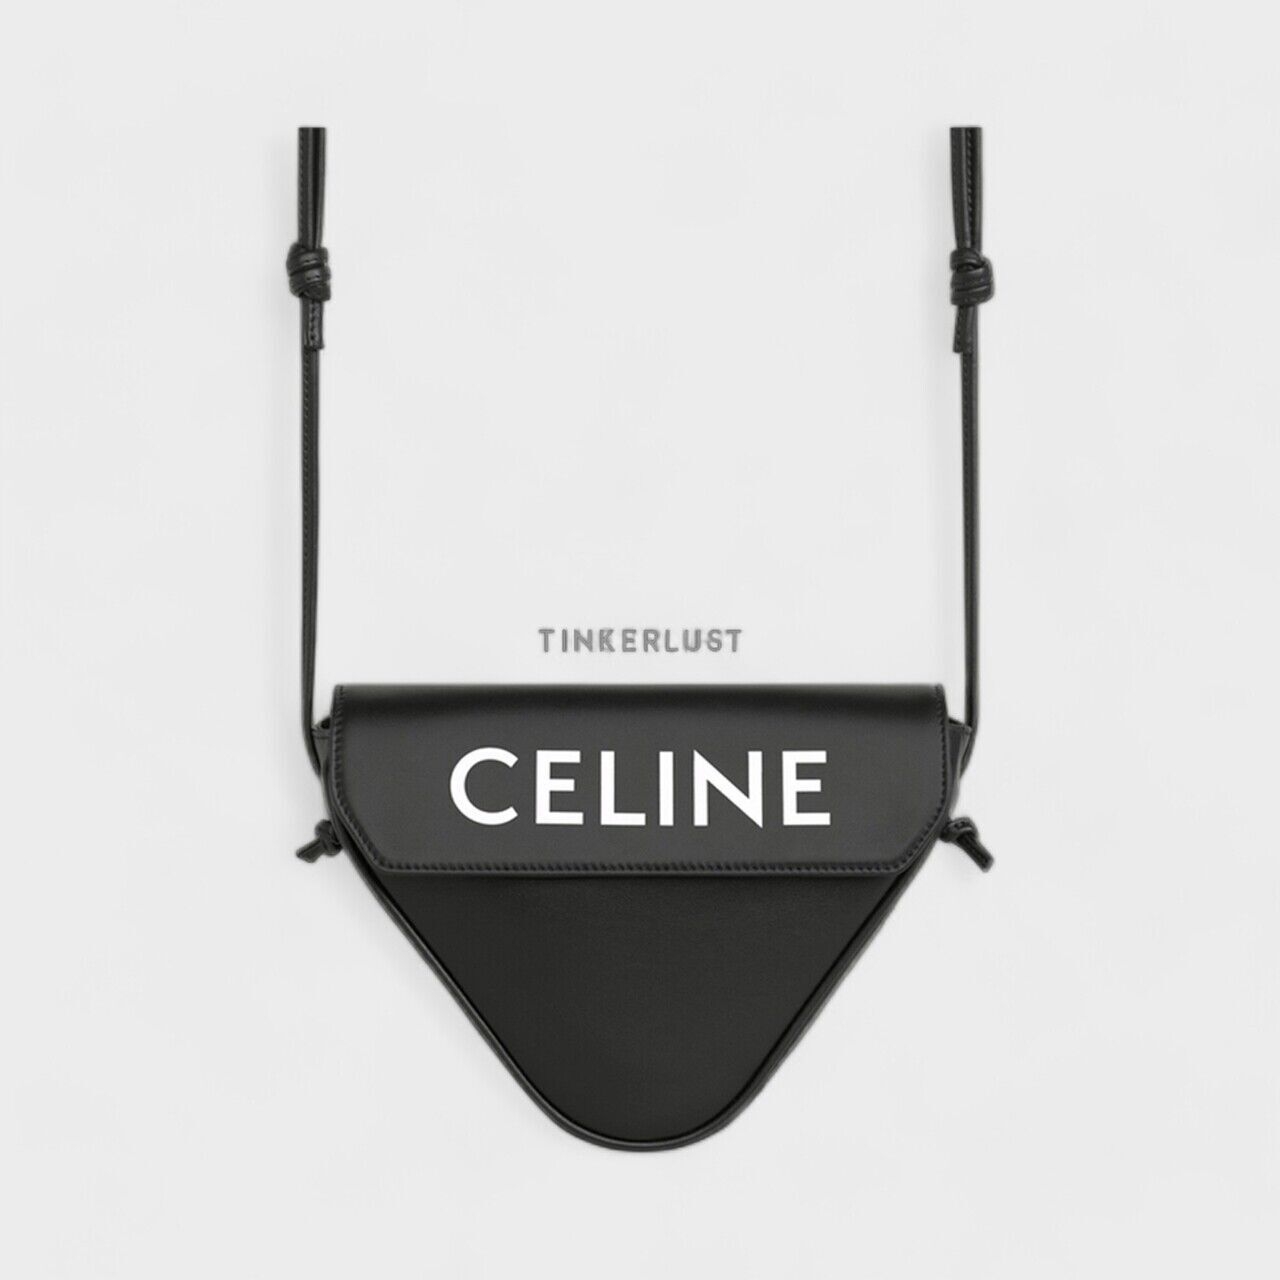 Celine Triangle in Black Smooth Calfskin with Celine Print Sling Bag